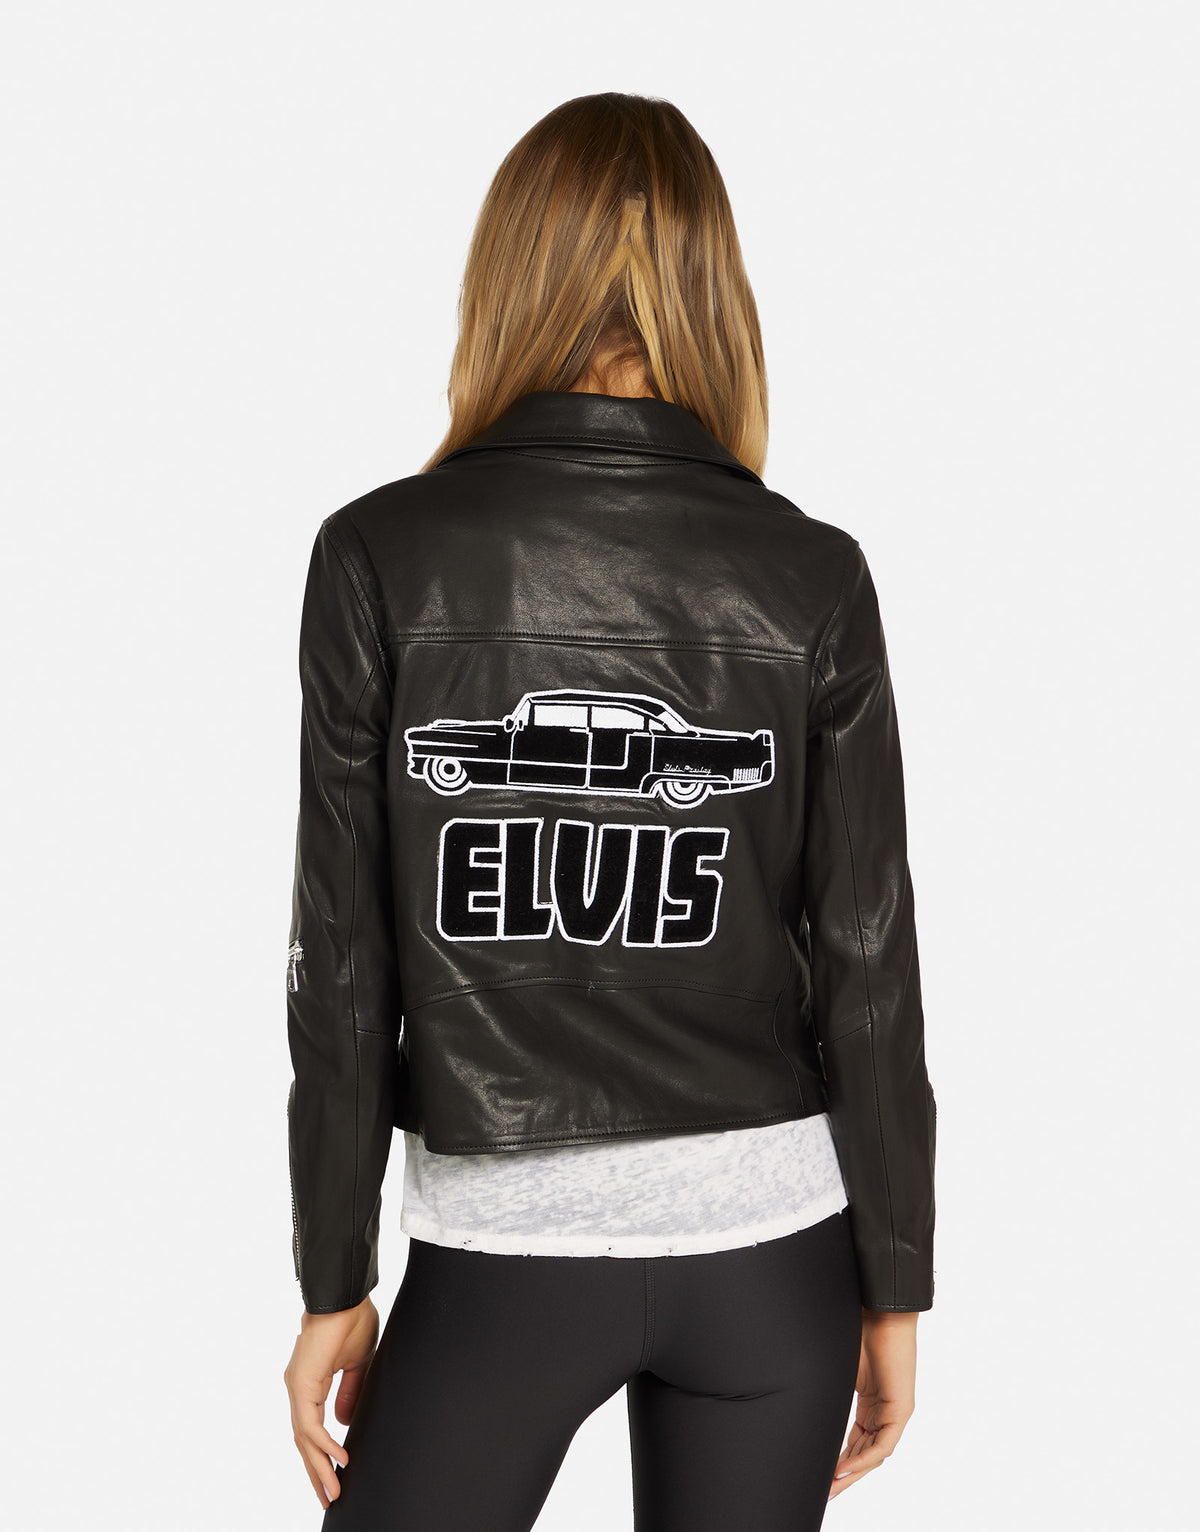 Posey Elvis Presley Cadillac